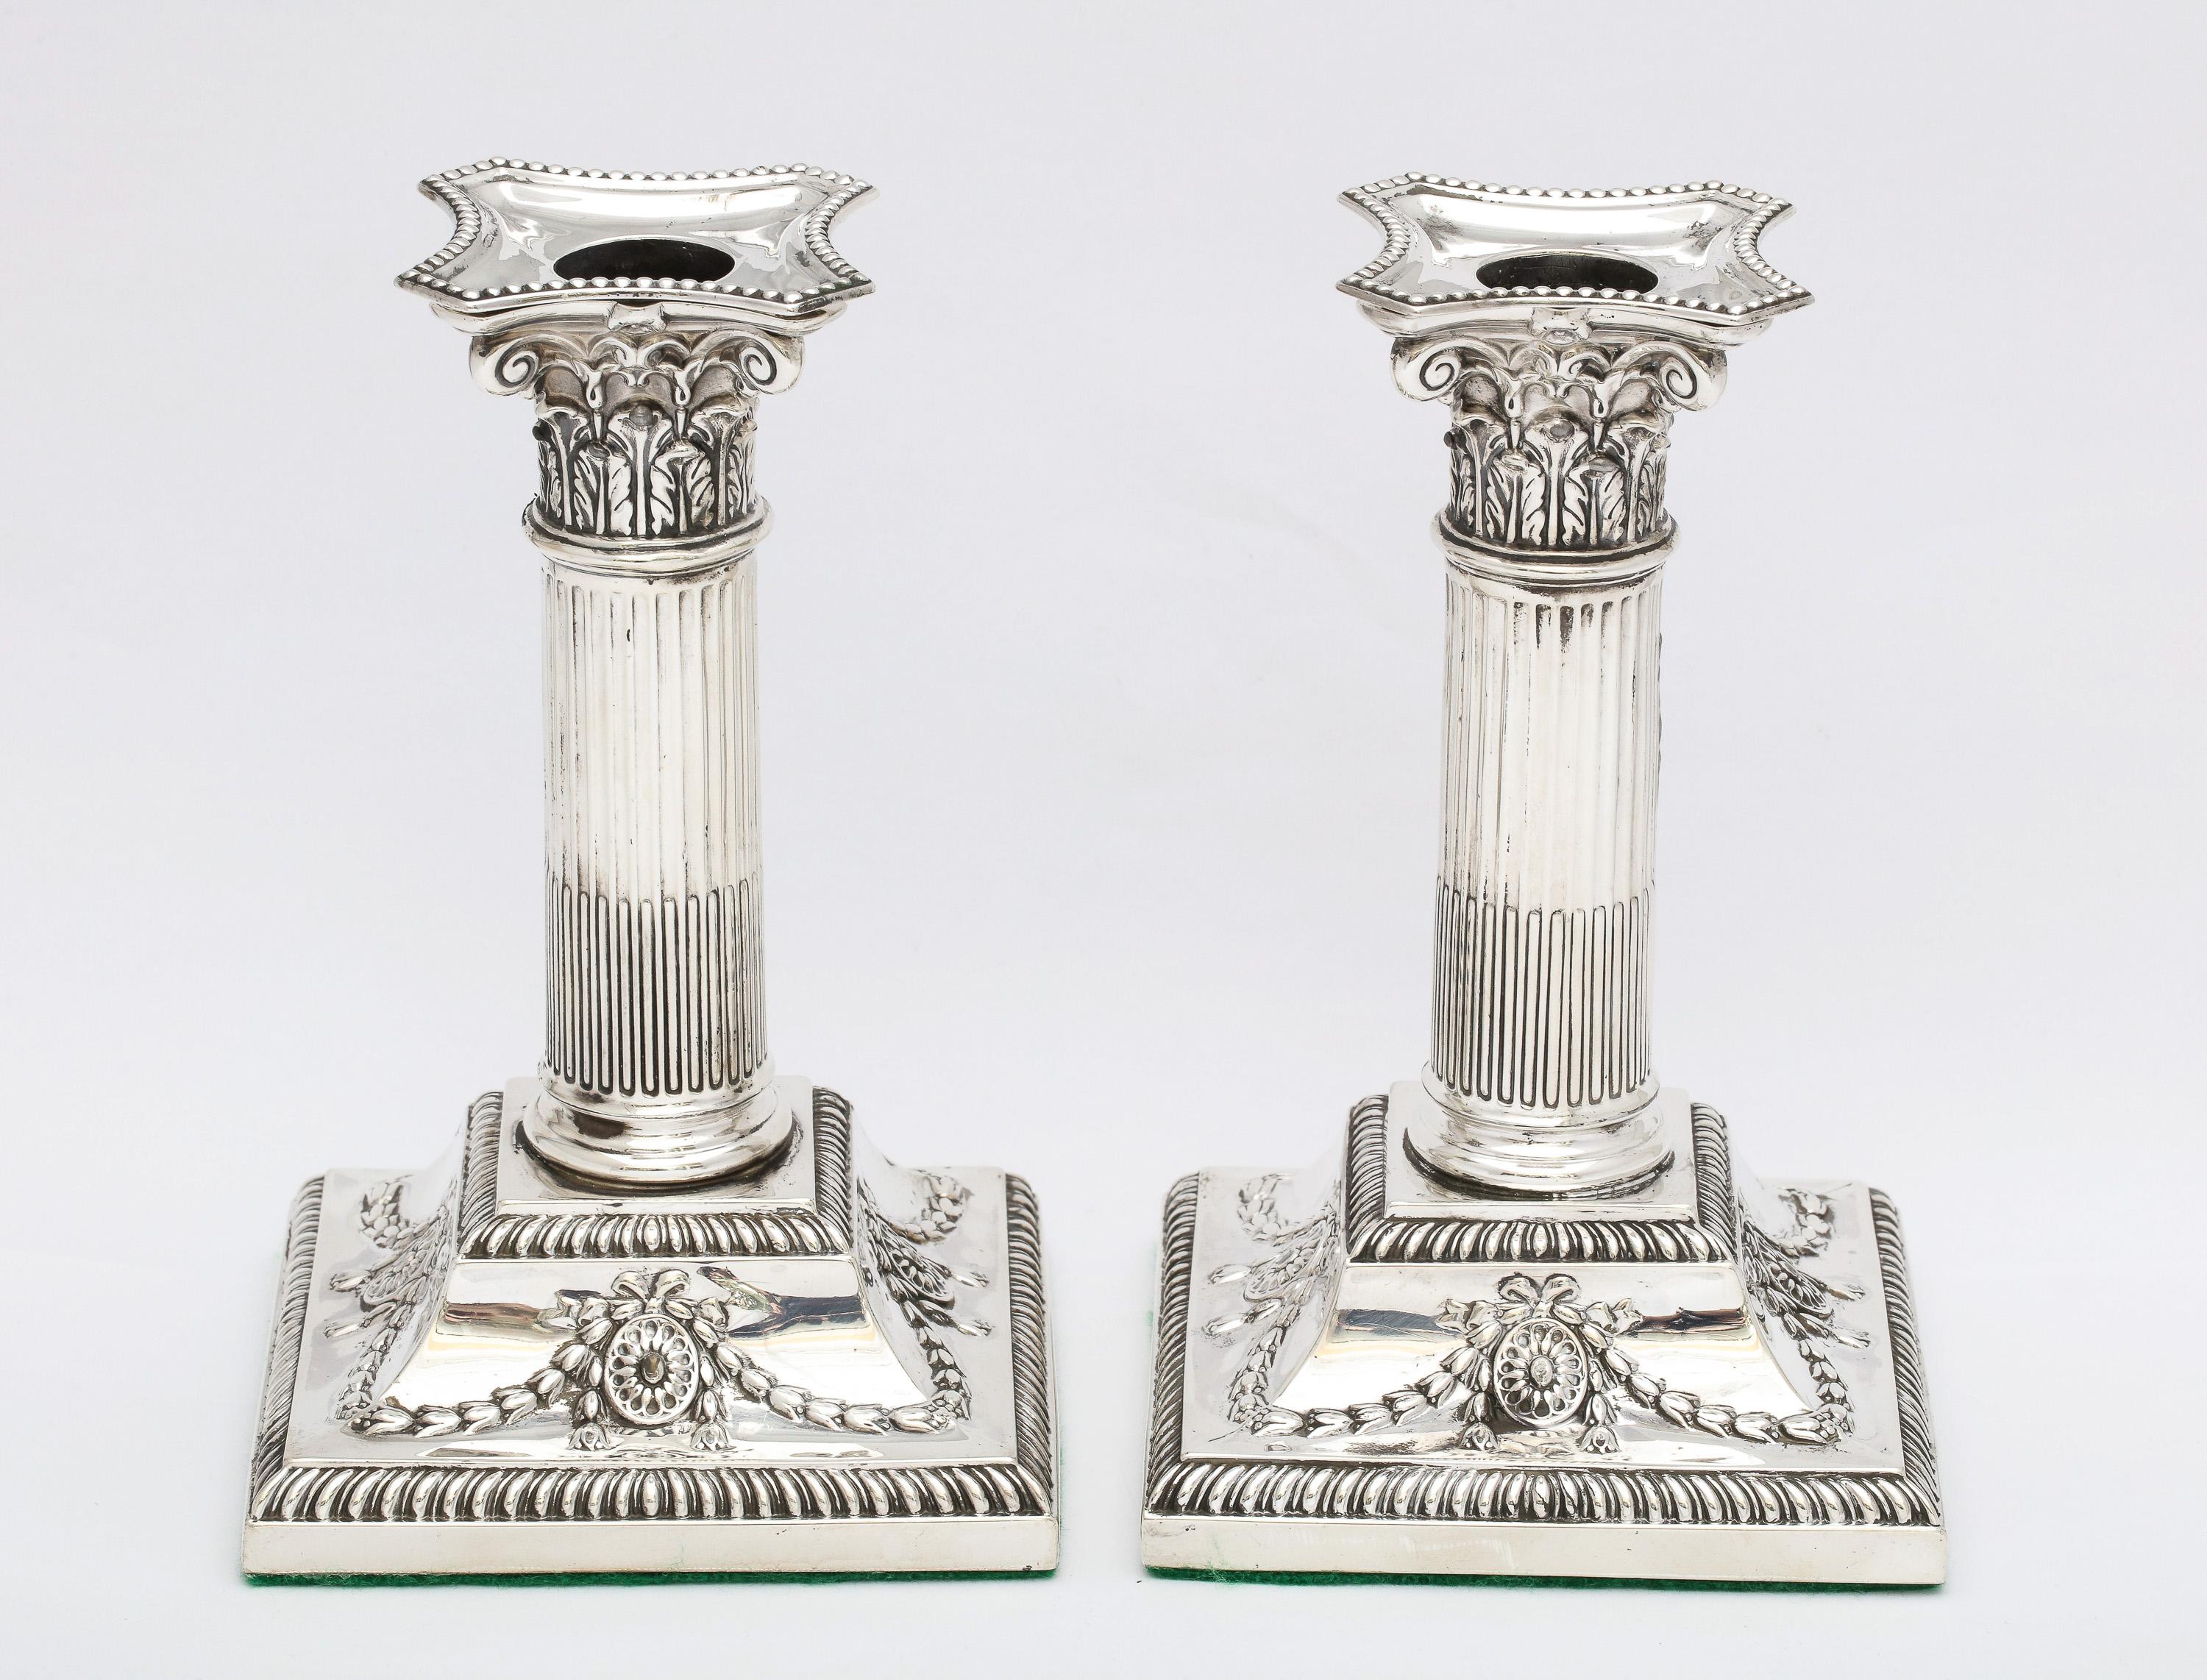 Wunderschönes Paar Kerzenhalter aus Sterlingsilber mit korinthischer Säule aus der viktorianischen Periode im neoklassizistischen Stil, hergestellt in Sheffield, England, gestempelt für das Jahr 1898, Hersteller Hawksworth, Eyre and Co. Die Basis